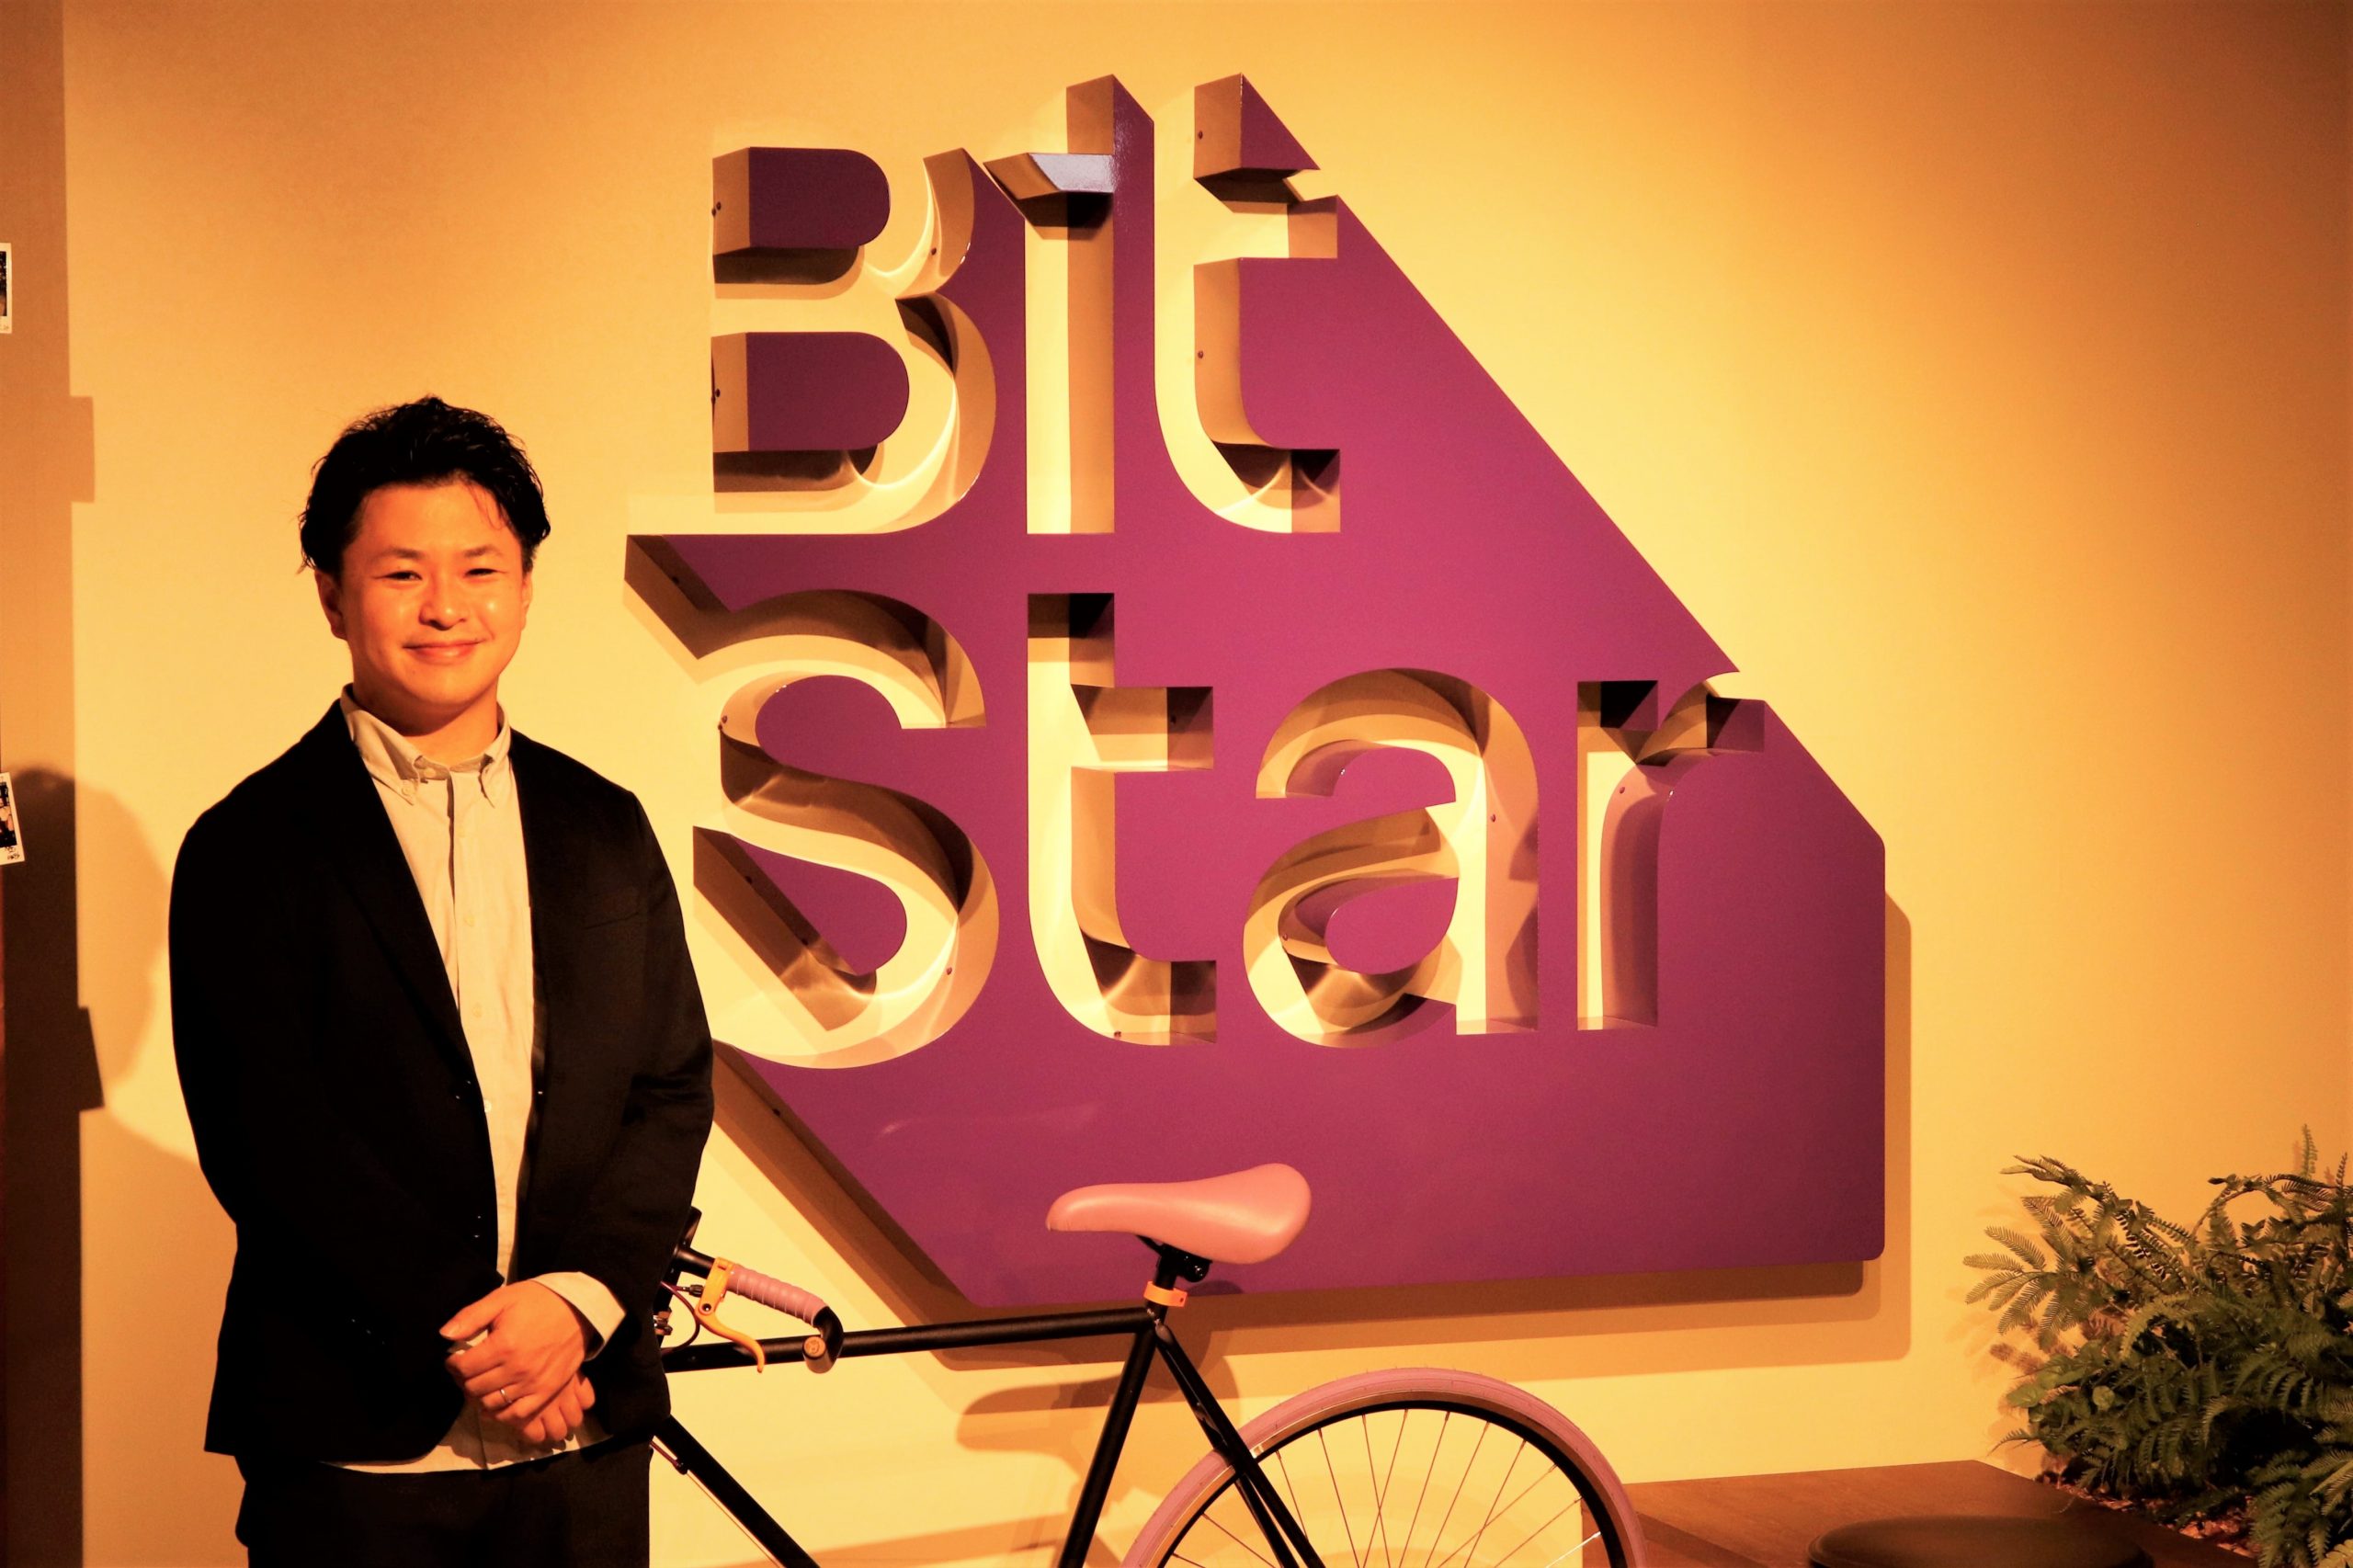 インフルエンサー「＋α」に勝ち筋を追う、BitStarのビジネス展開